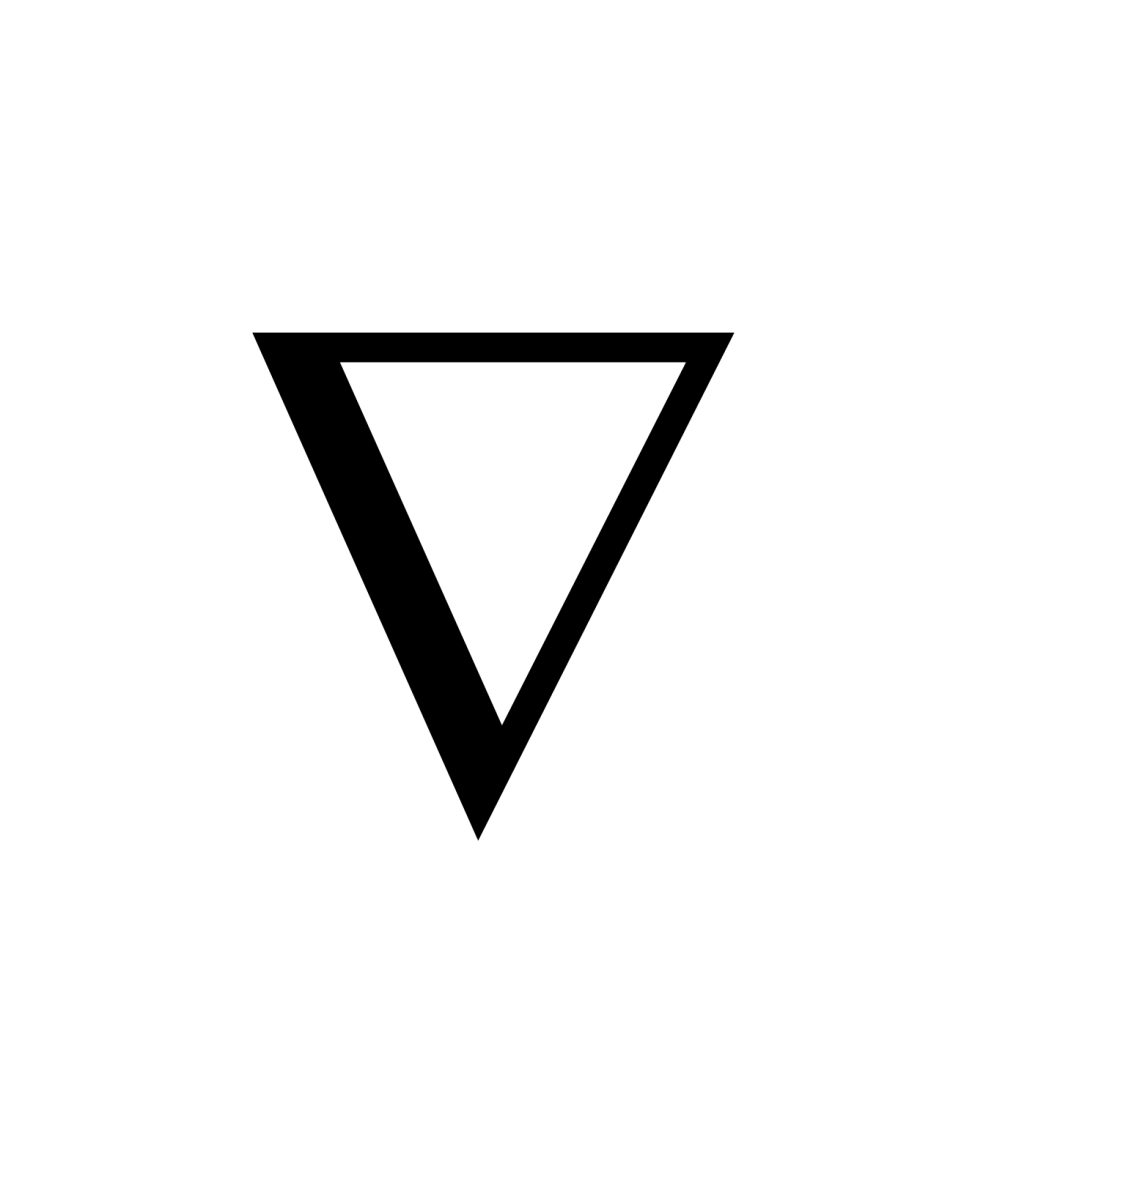 VG logo vector